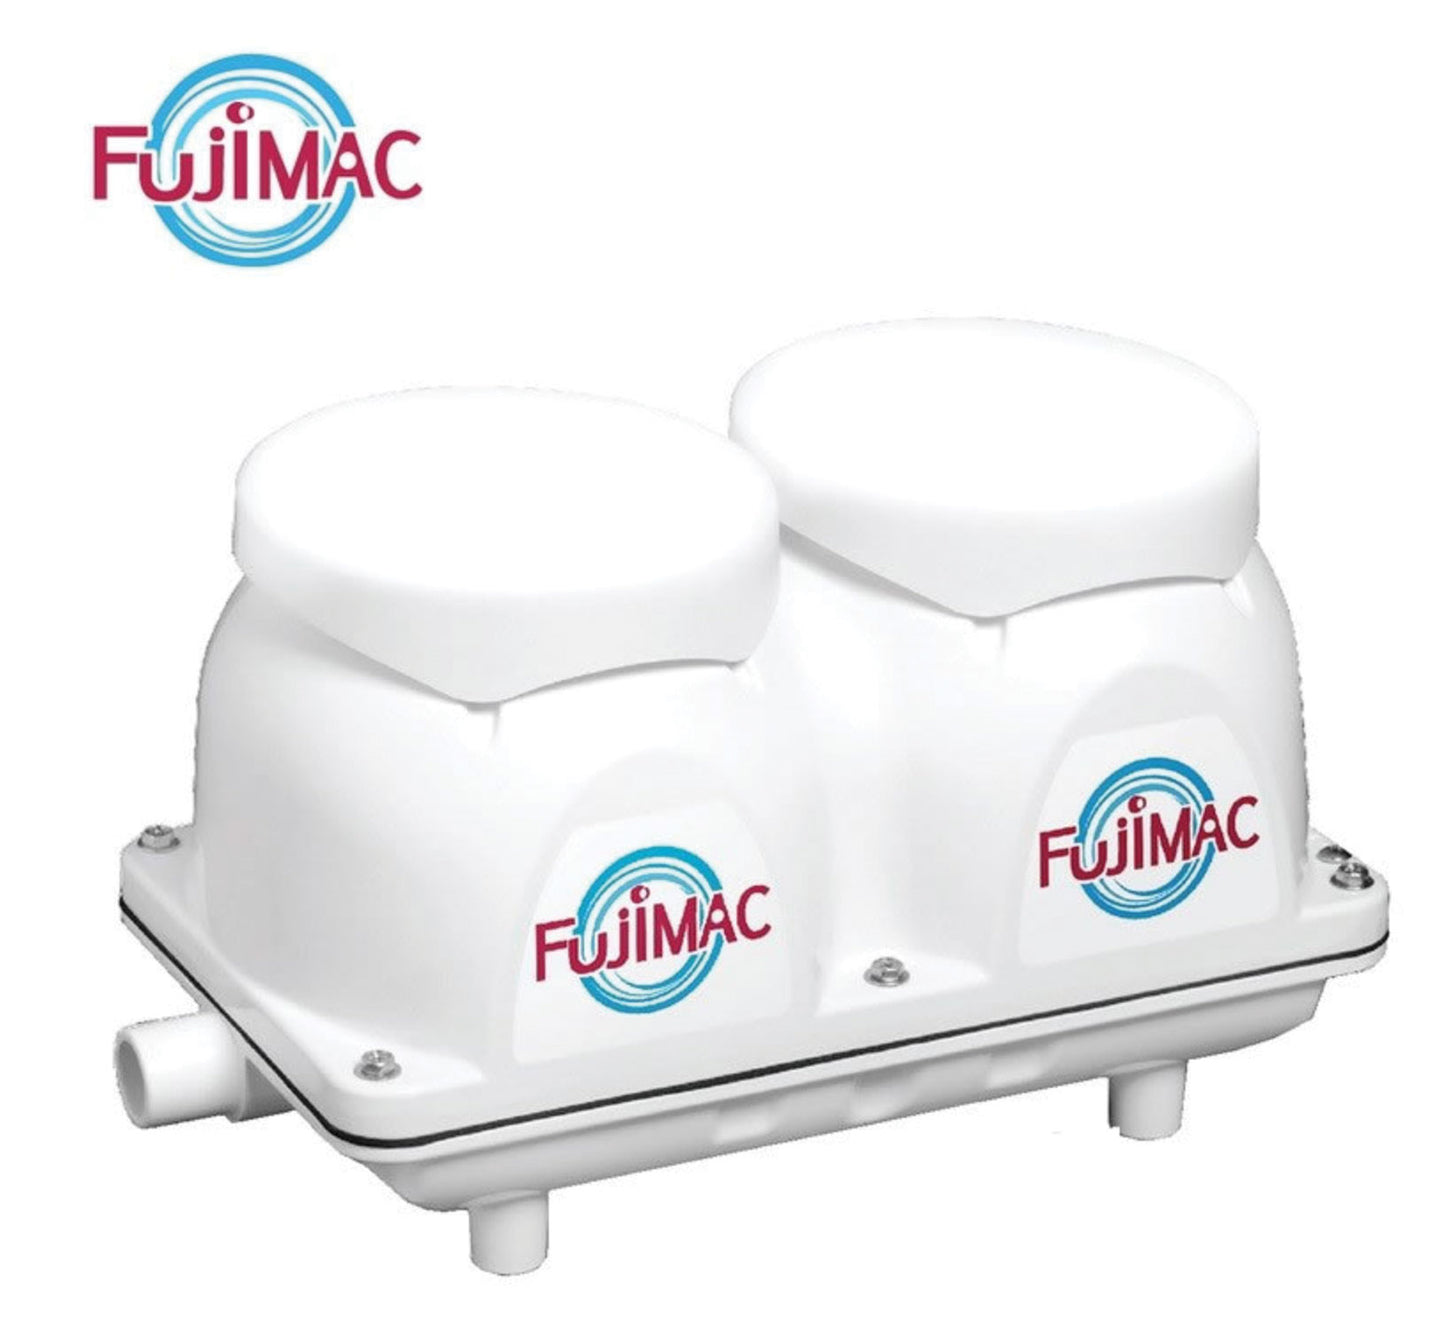 FUJIMAC 150 *UK* - SKS Wholesale